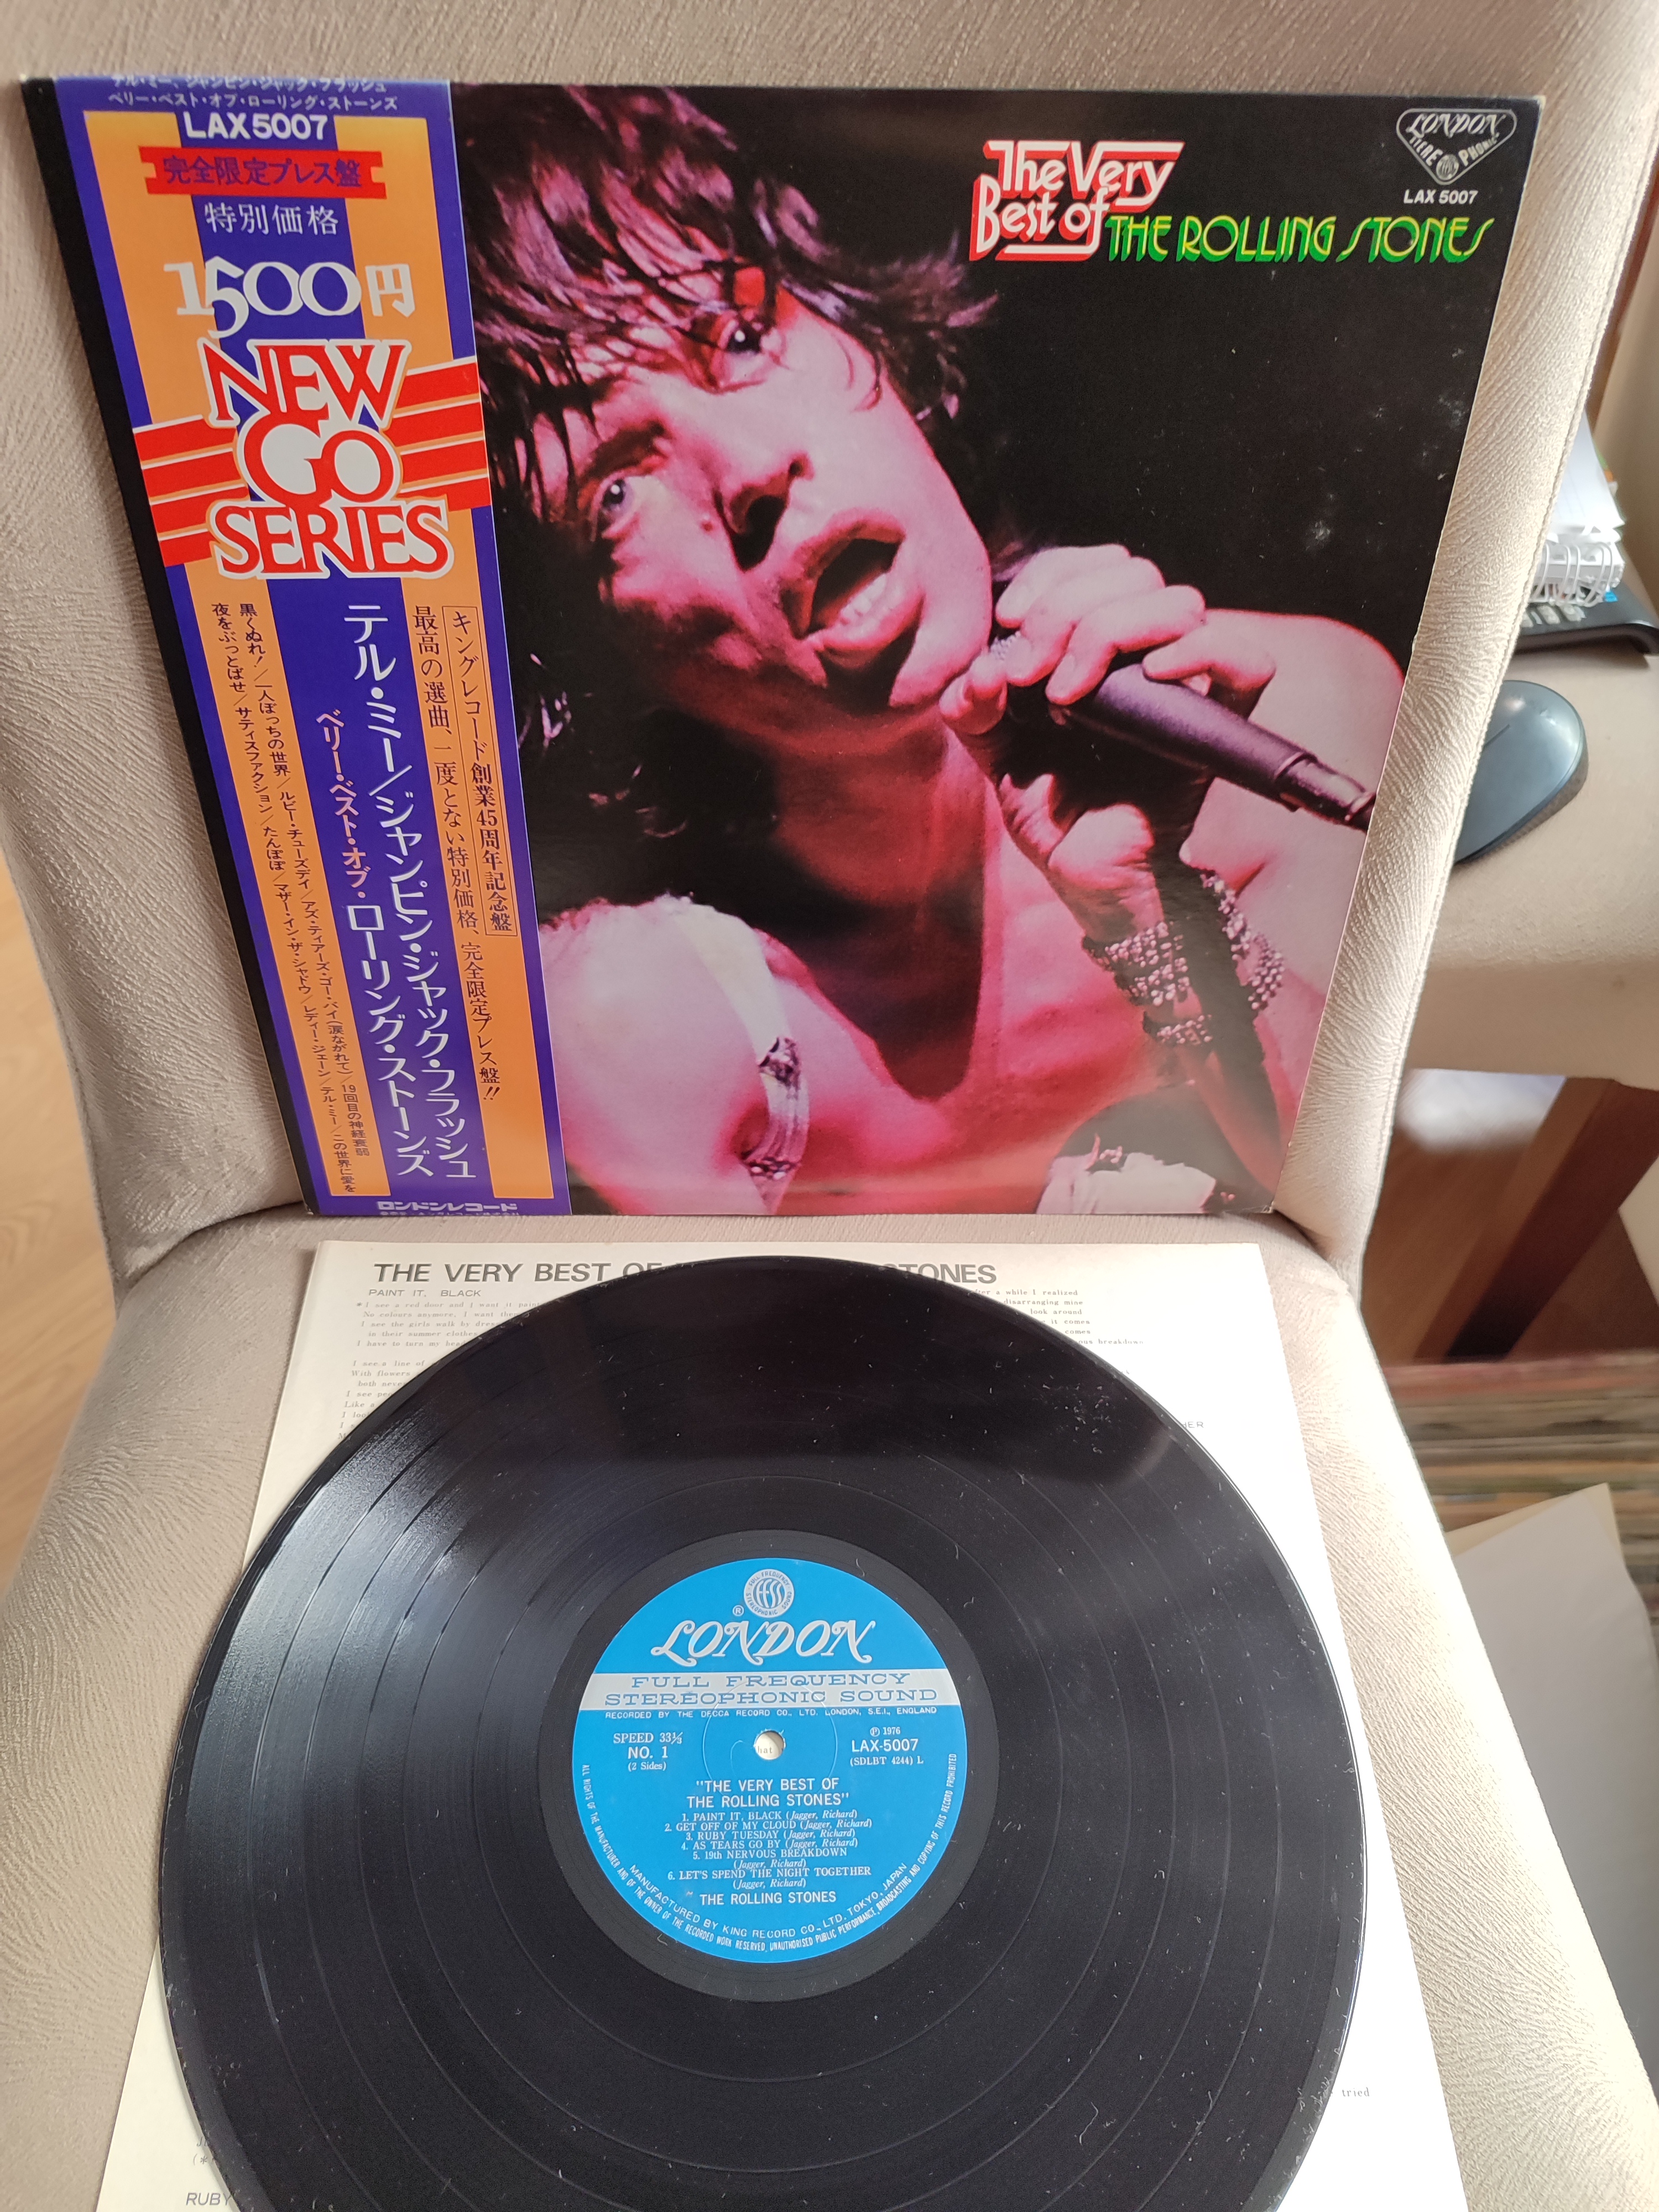 The Very Best of ROLLING STONES - 1976 Japonya Basım - 33 lük LP Plak Albüm - Obi’li 2. EL